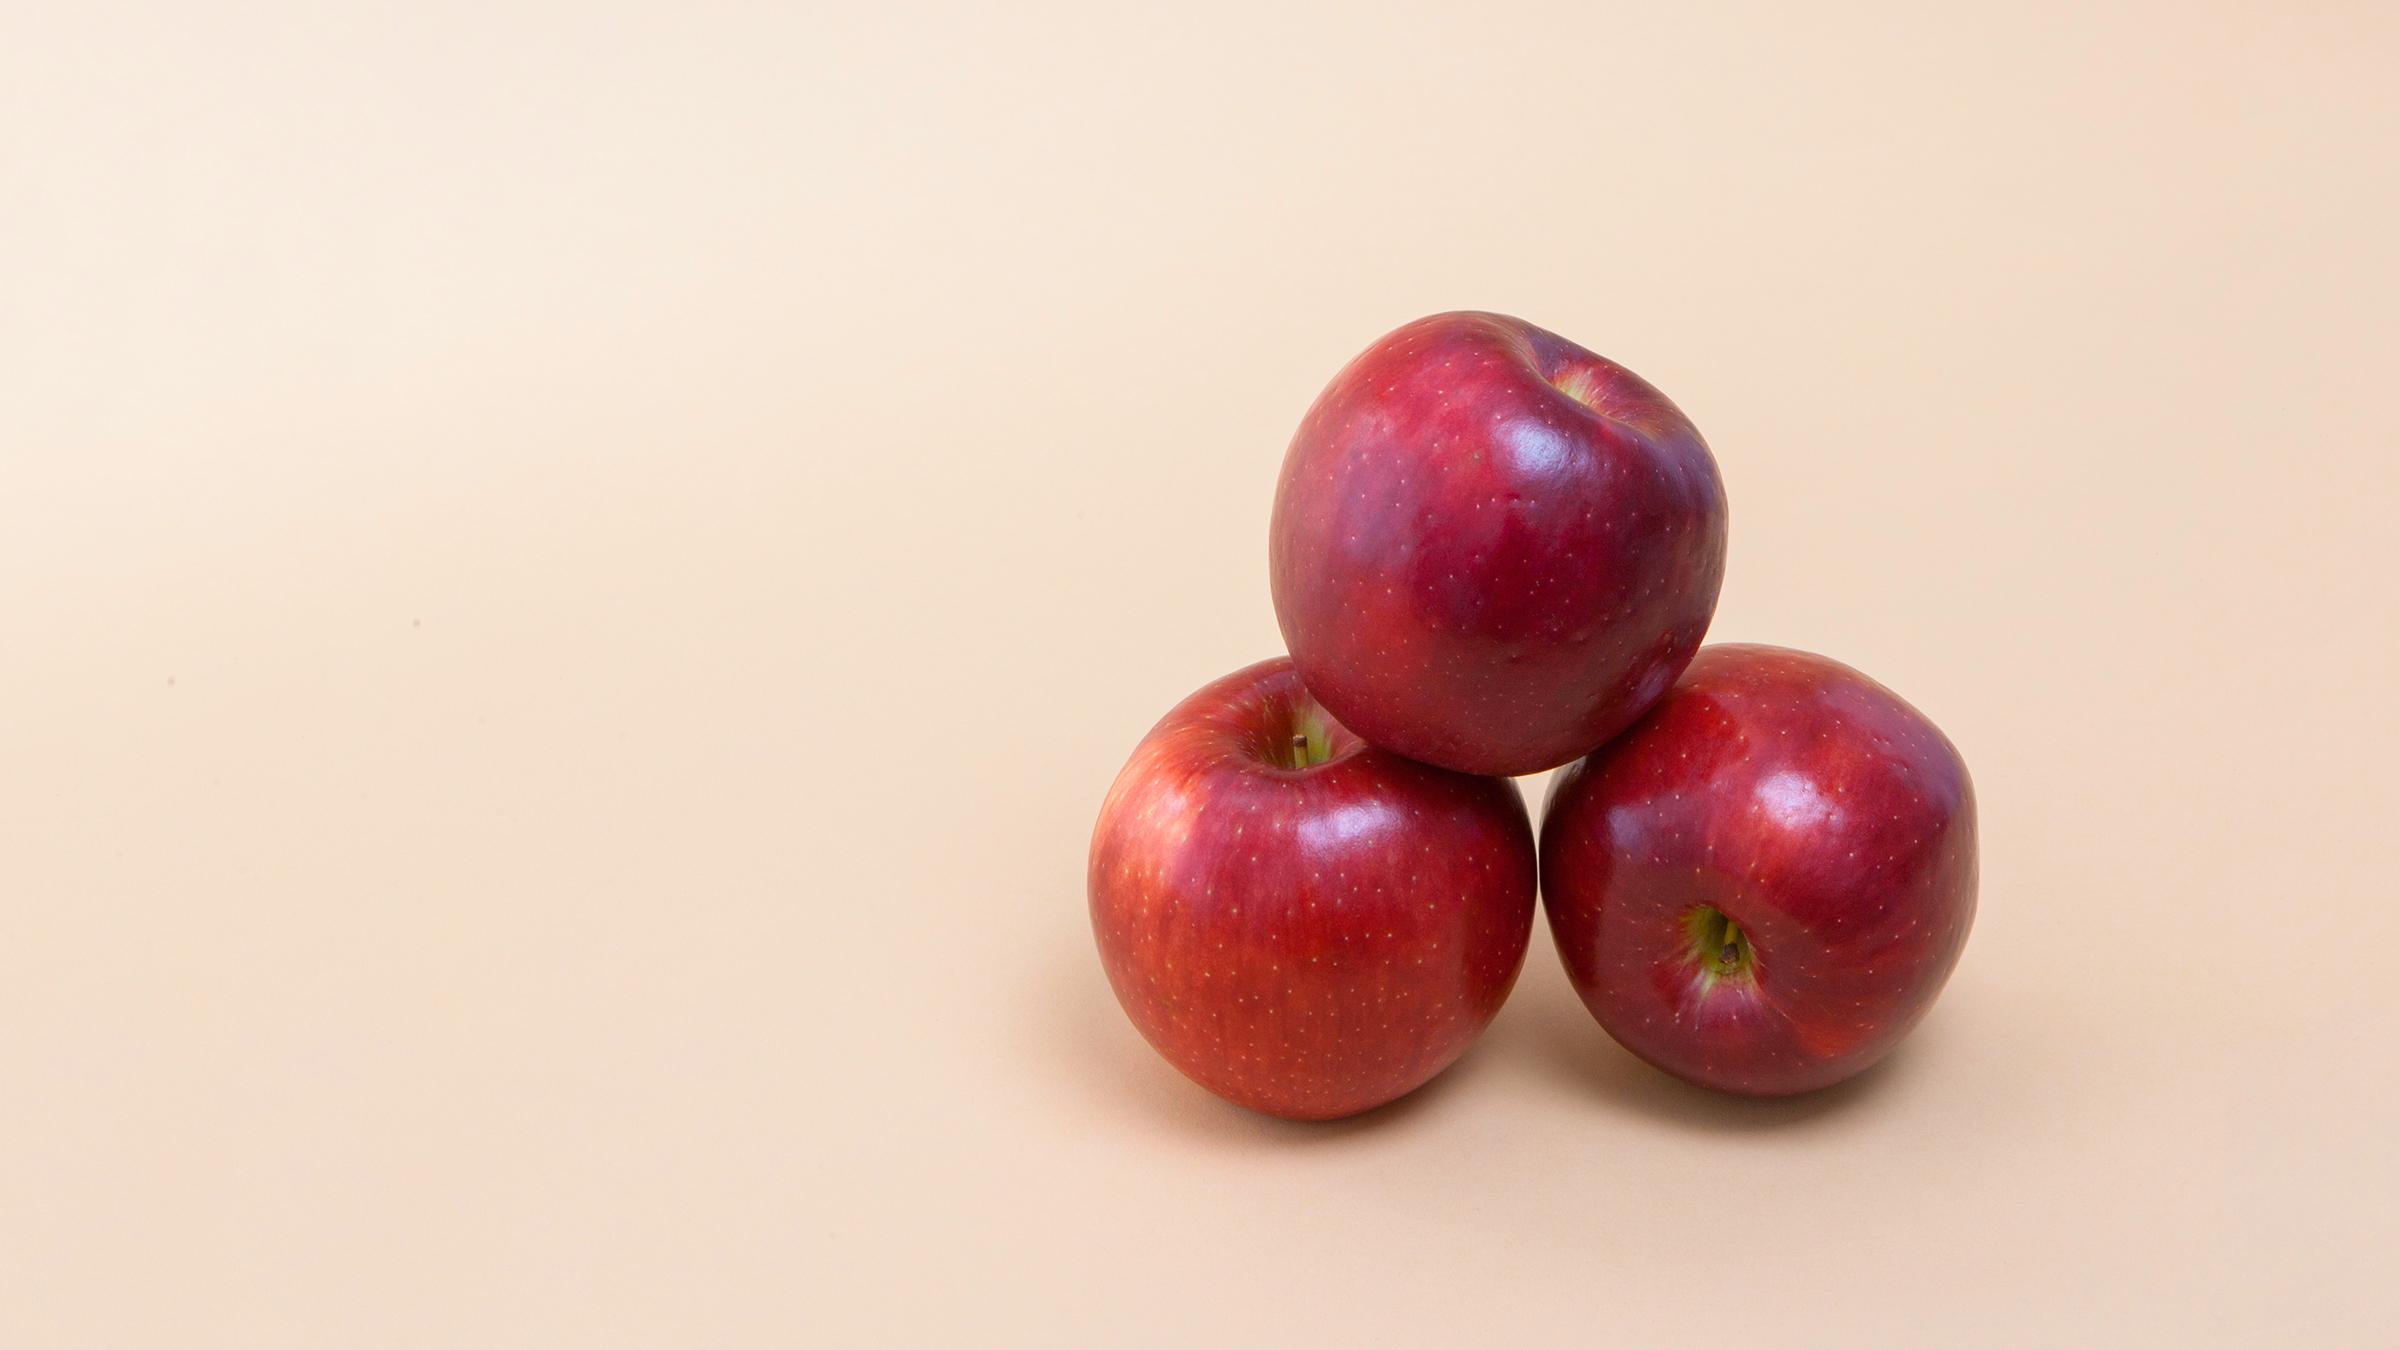 Jabuke dokazano smanjuju rizik od pojave raka pluća - Avaz